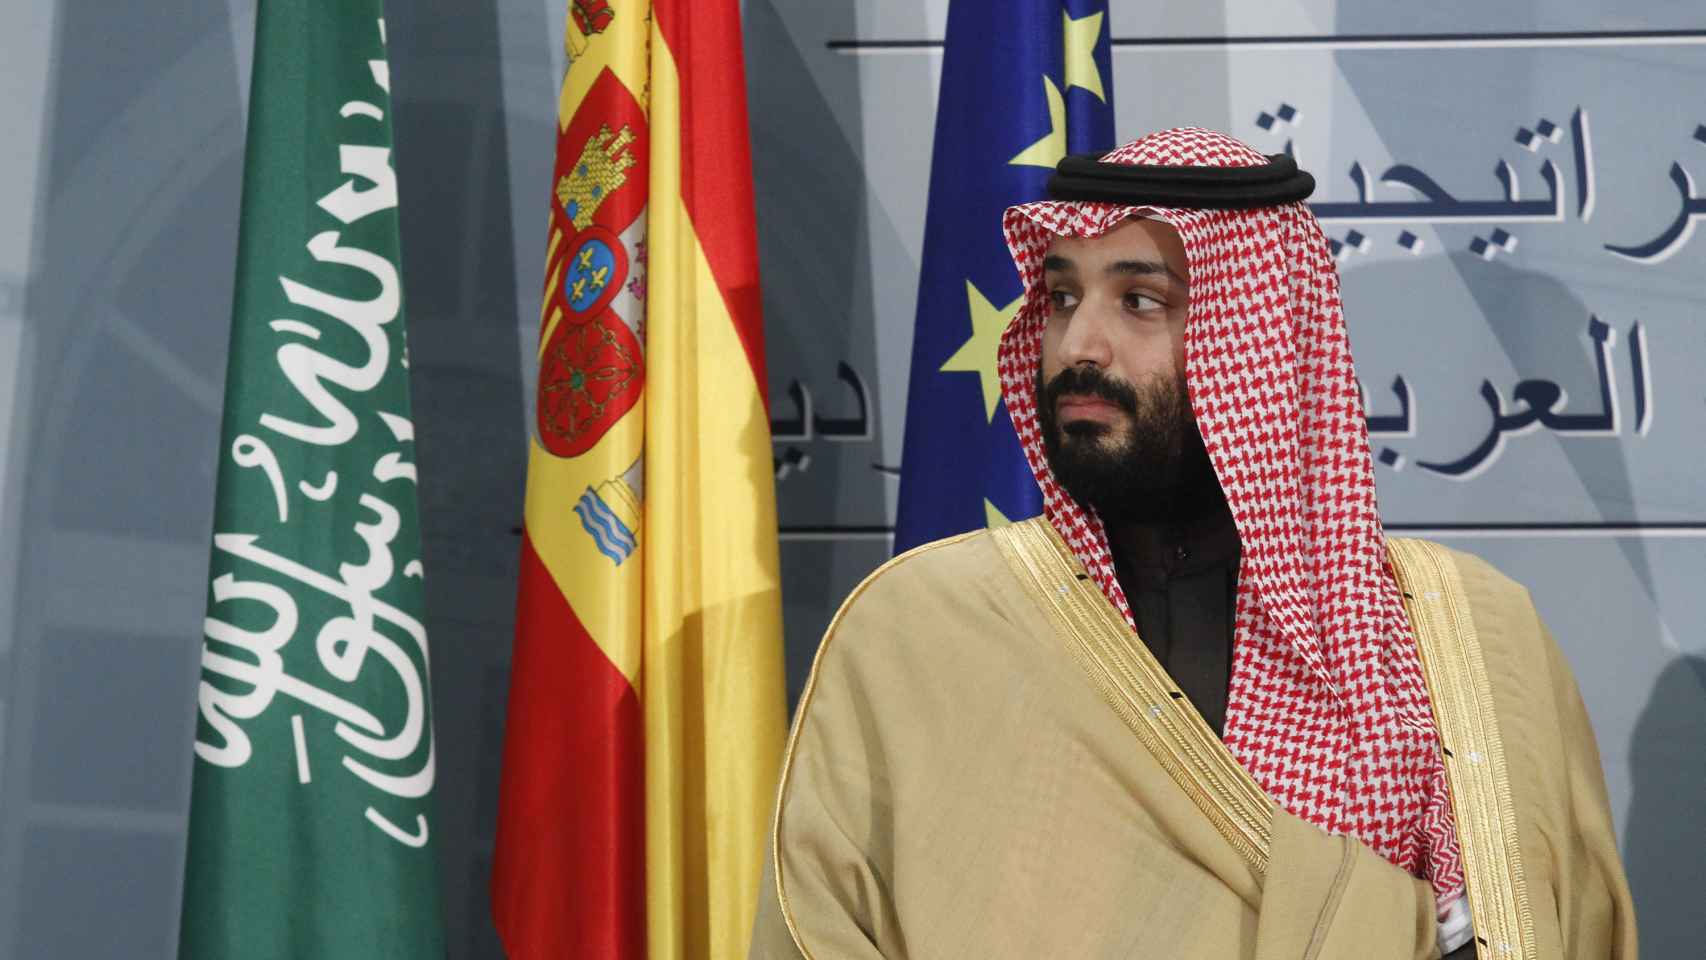 El príncipe heredero Mohamed Bin Salman está envuelto en polémica, al igual que su hermana.